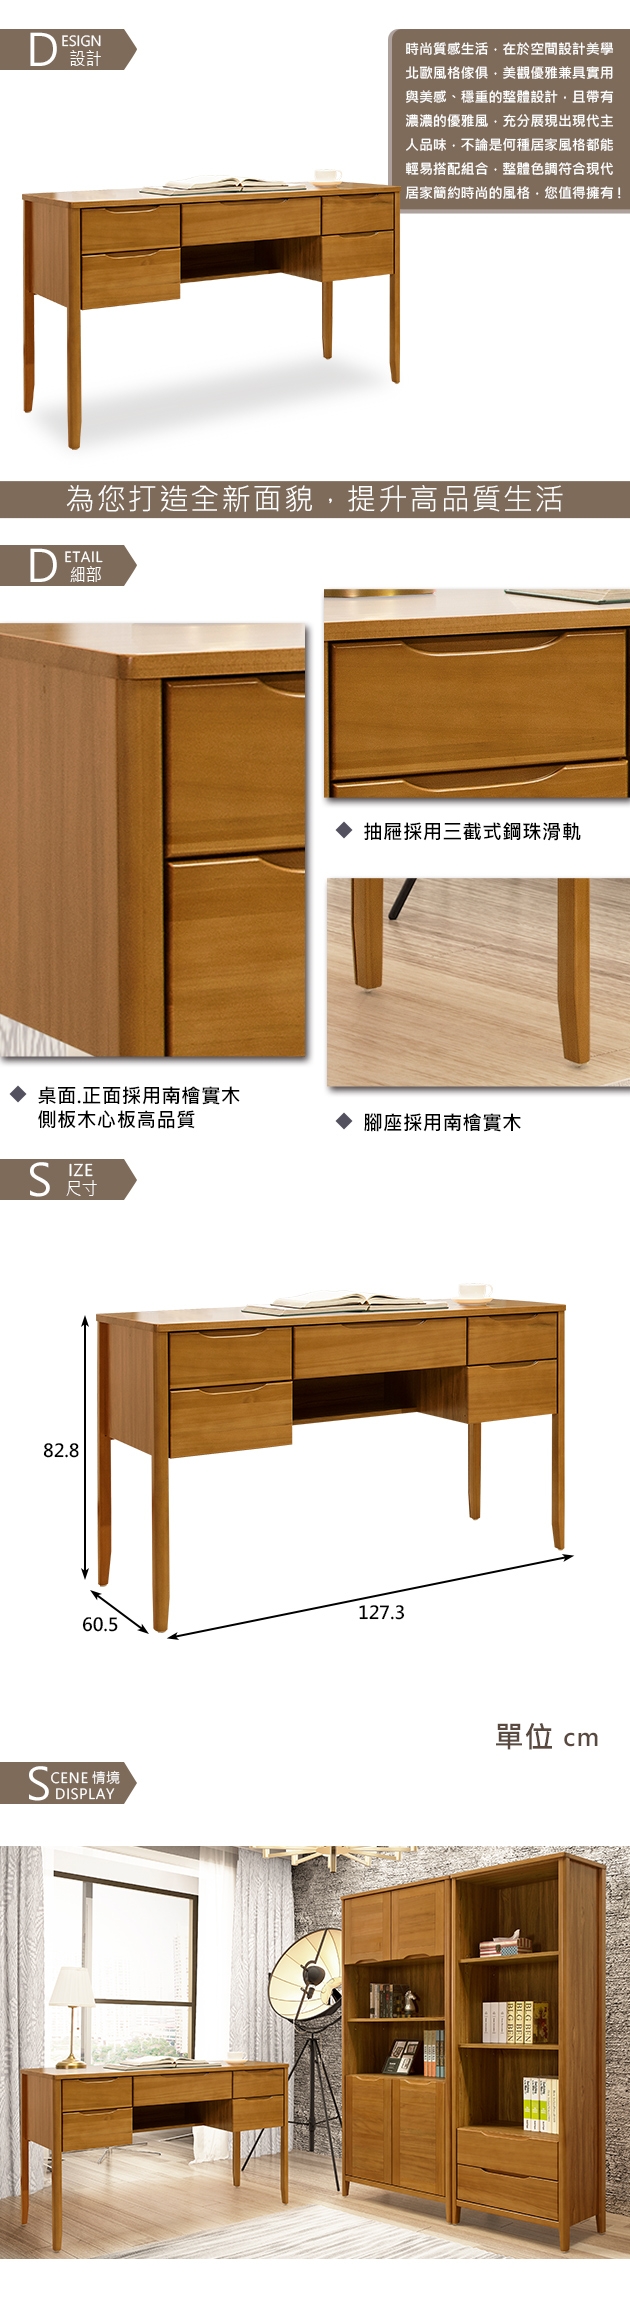 時尚屋米堤柚木4.2尺書桌 寬127.3x深60.5x高82.8cm